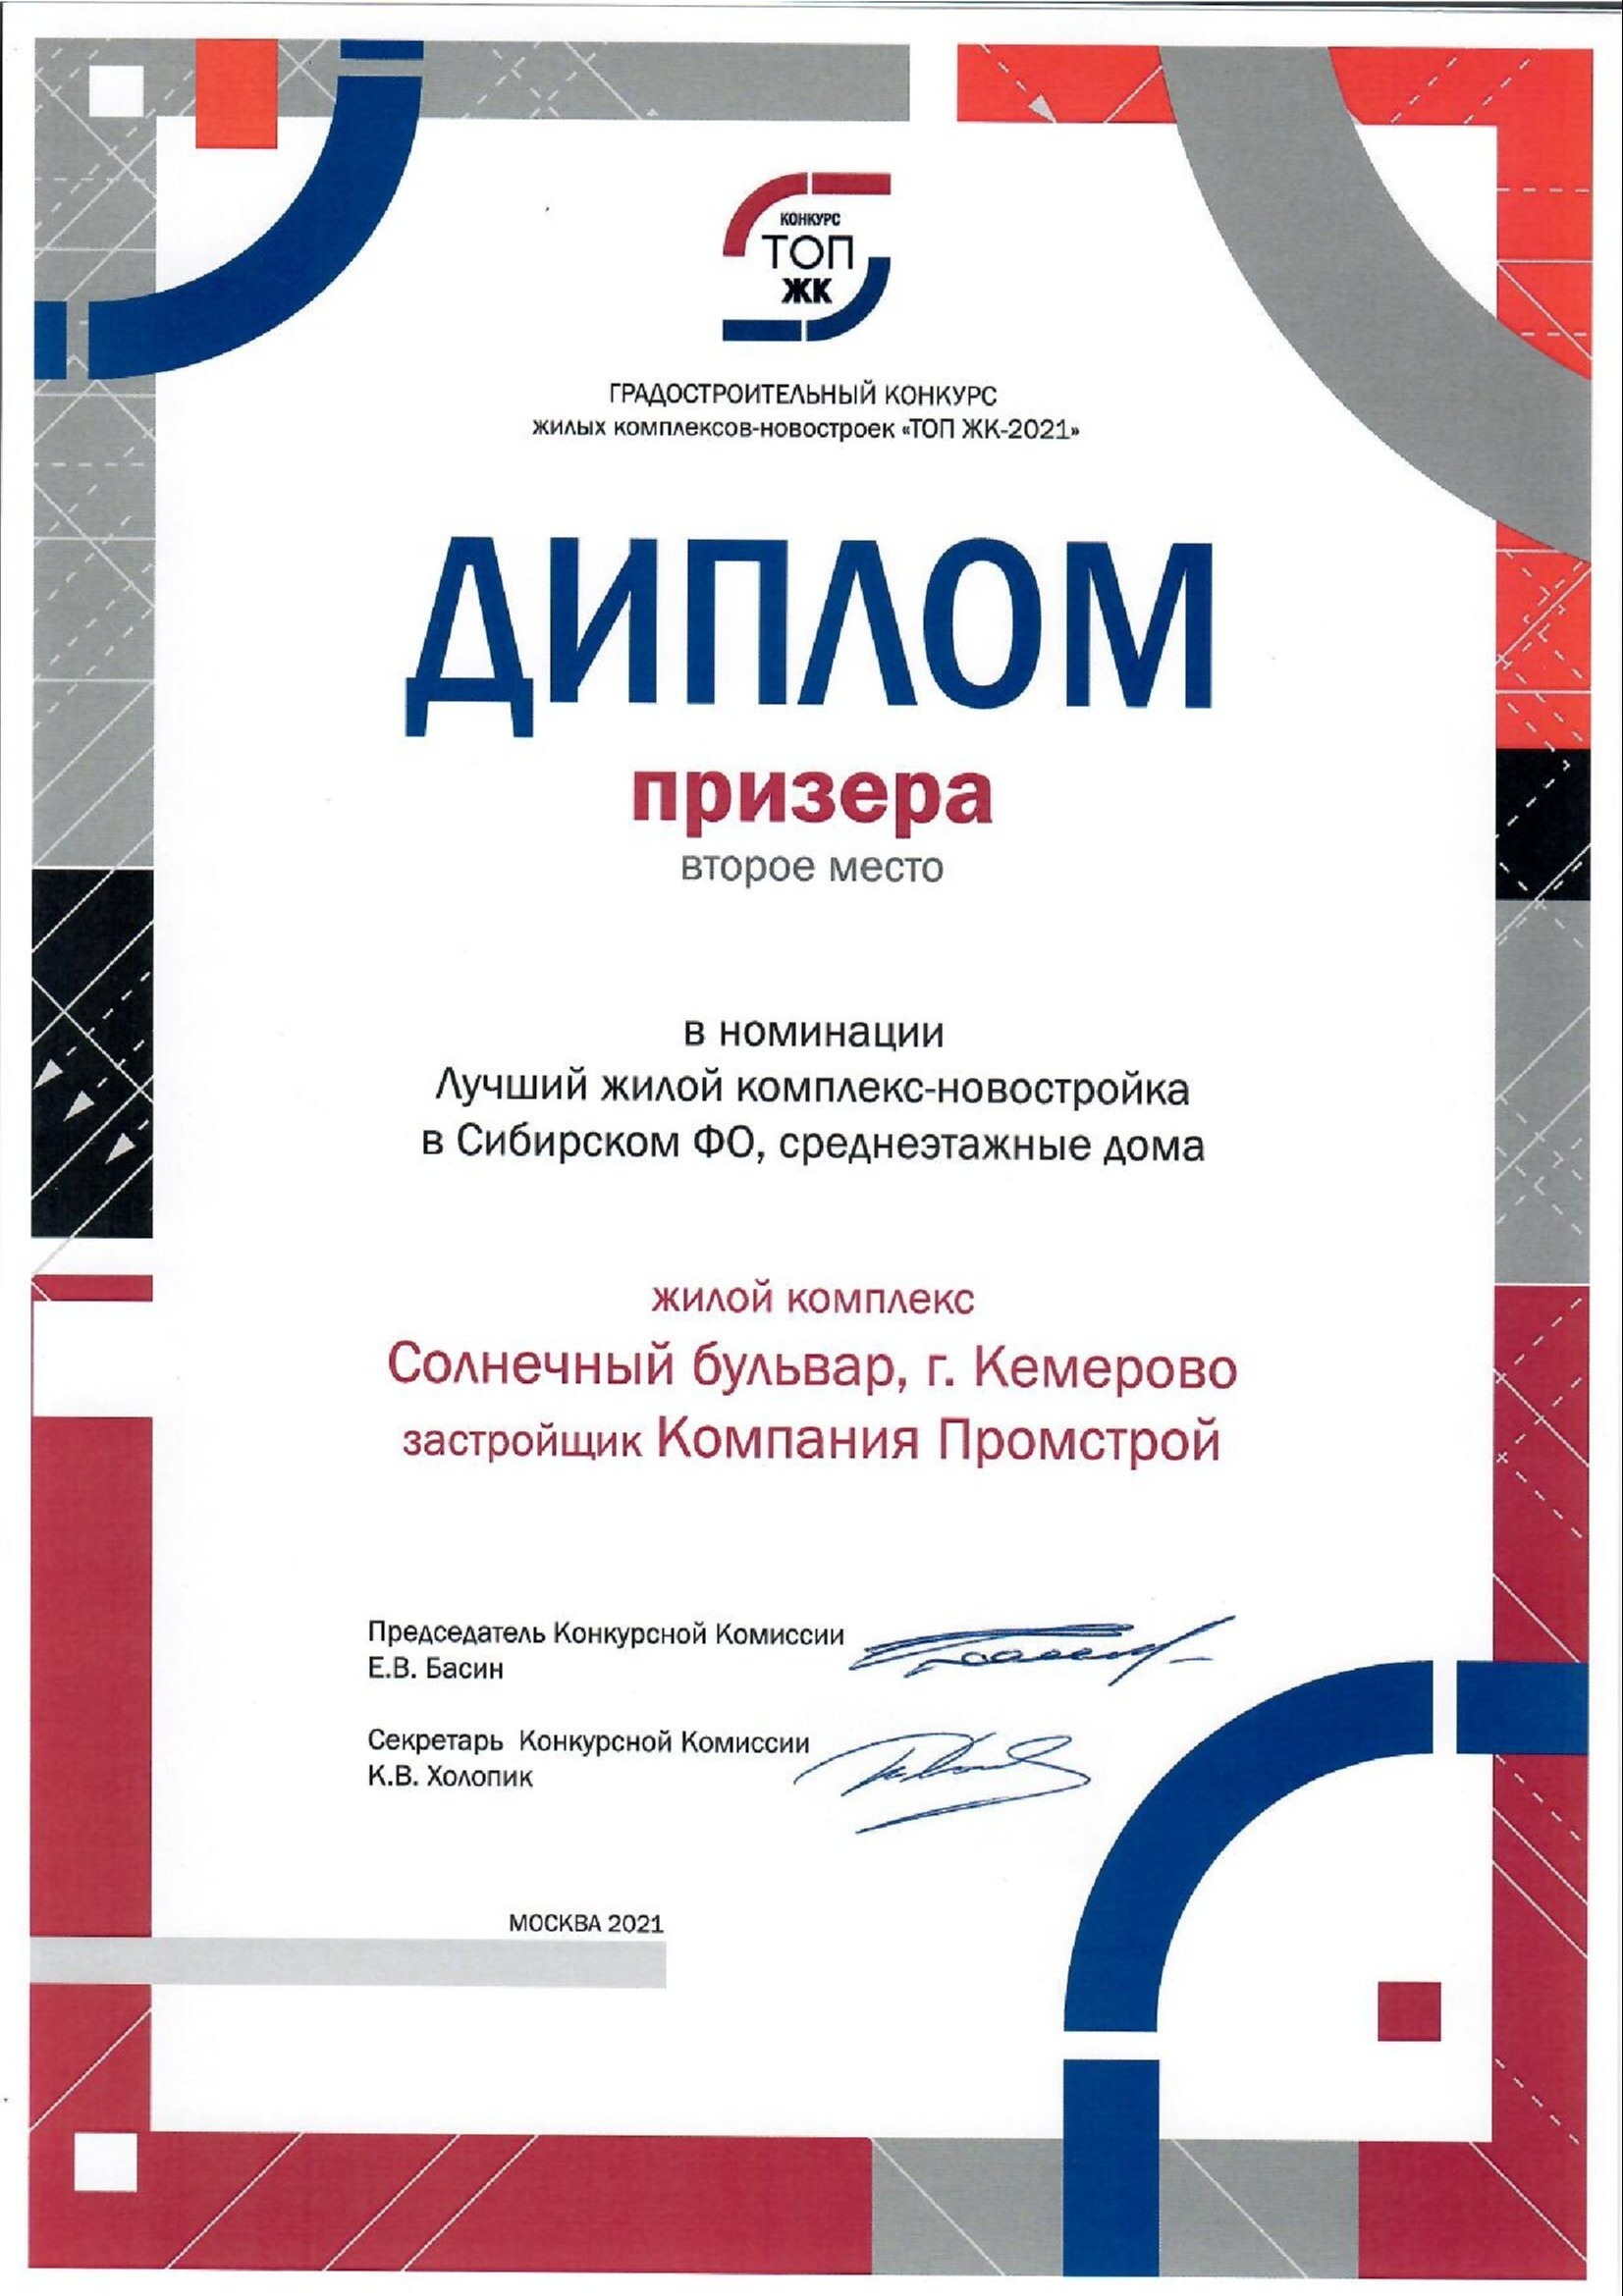 "Промстрой" получил диплом в номинации "Лучший жилой комплекс-новостройка в СФО" премии ТОП ЖК-2021